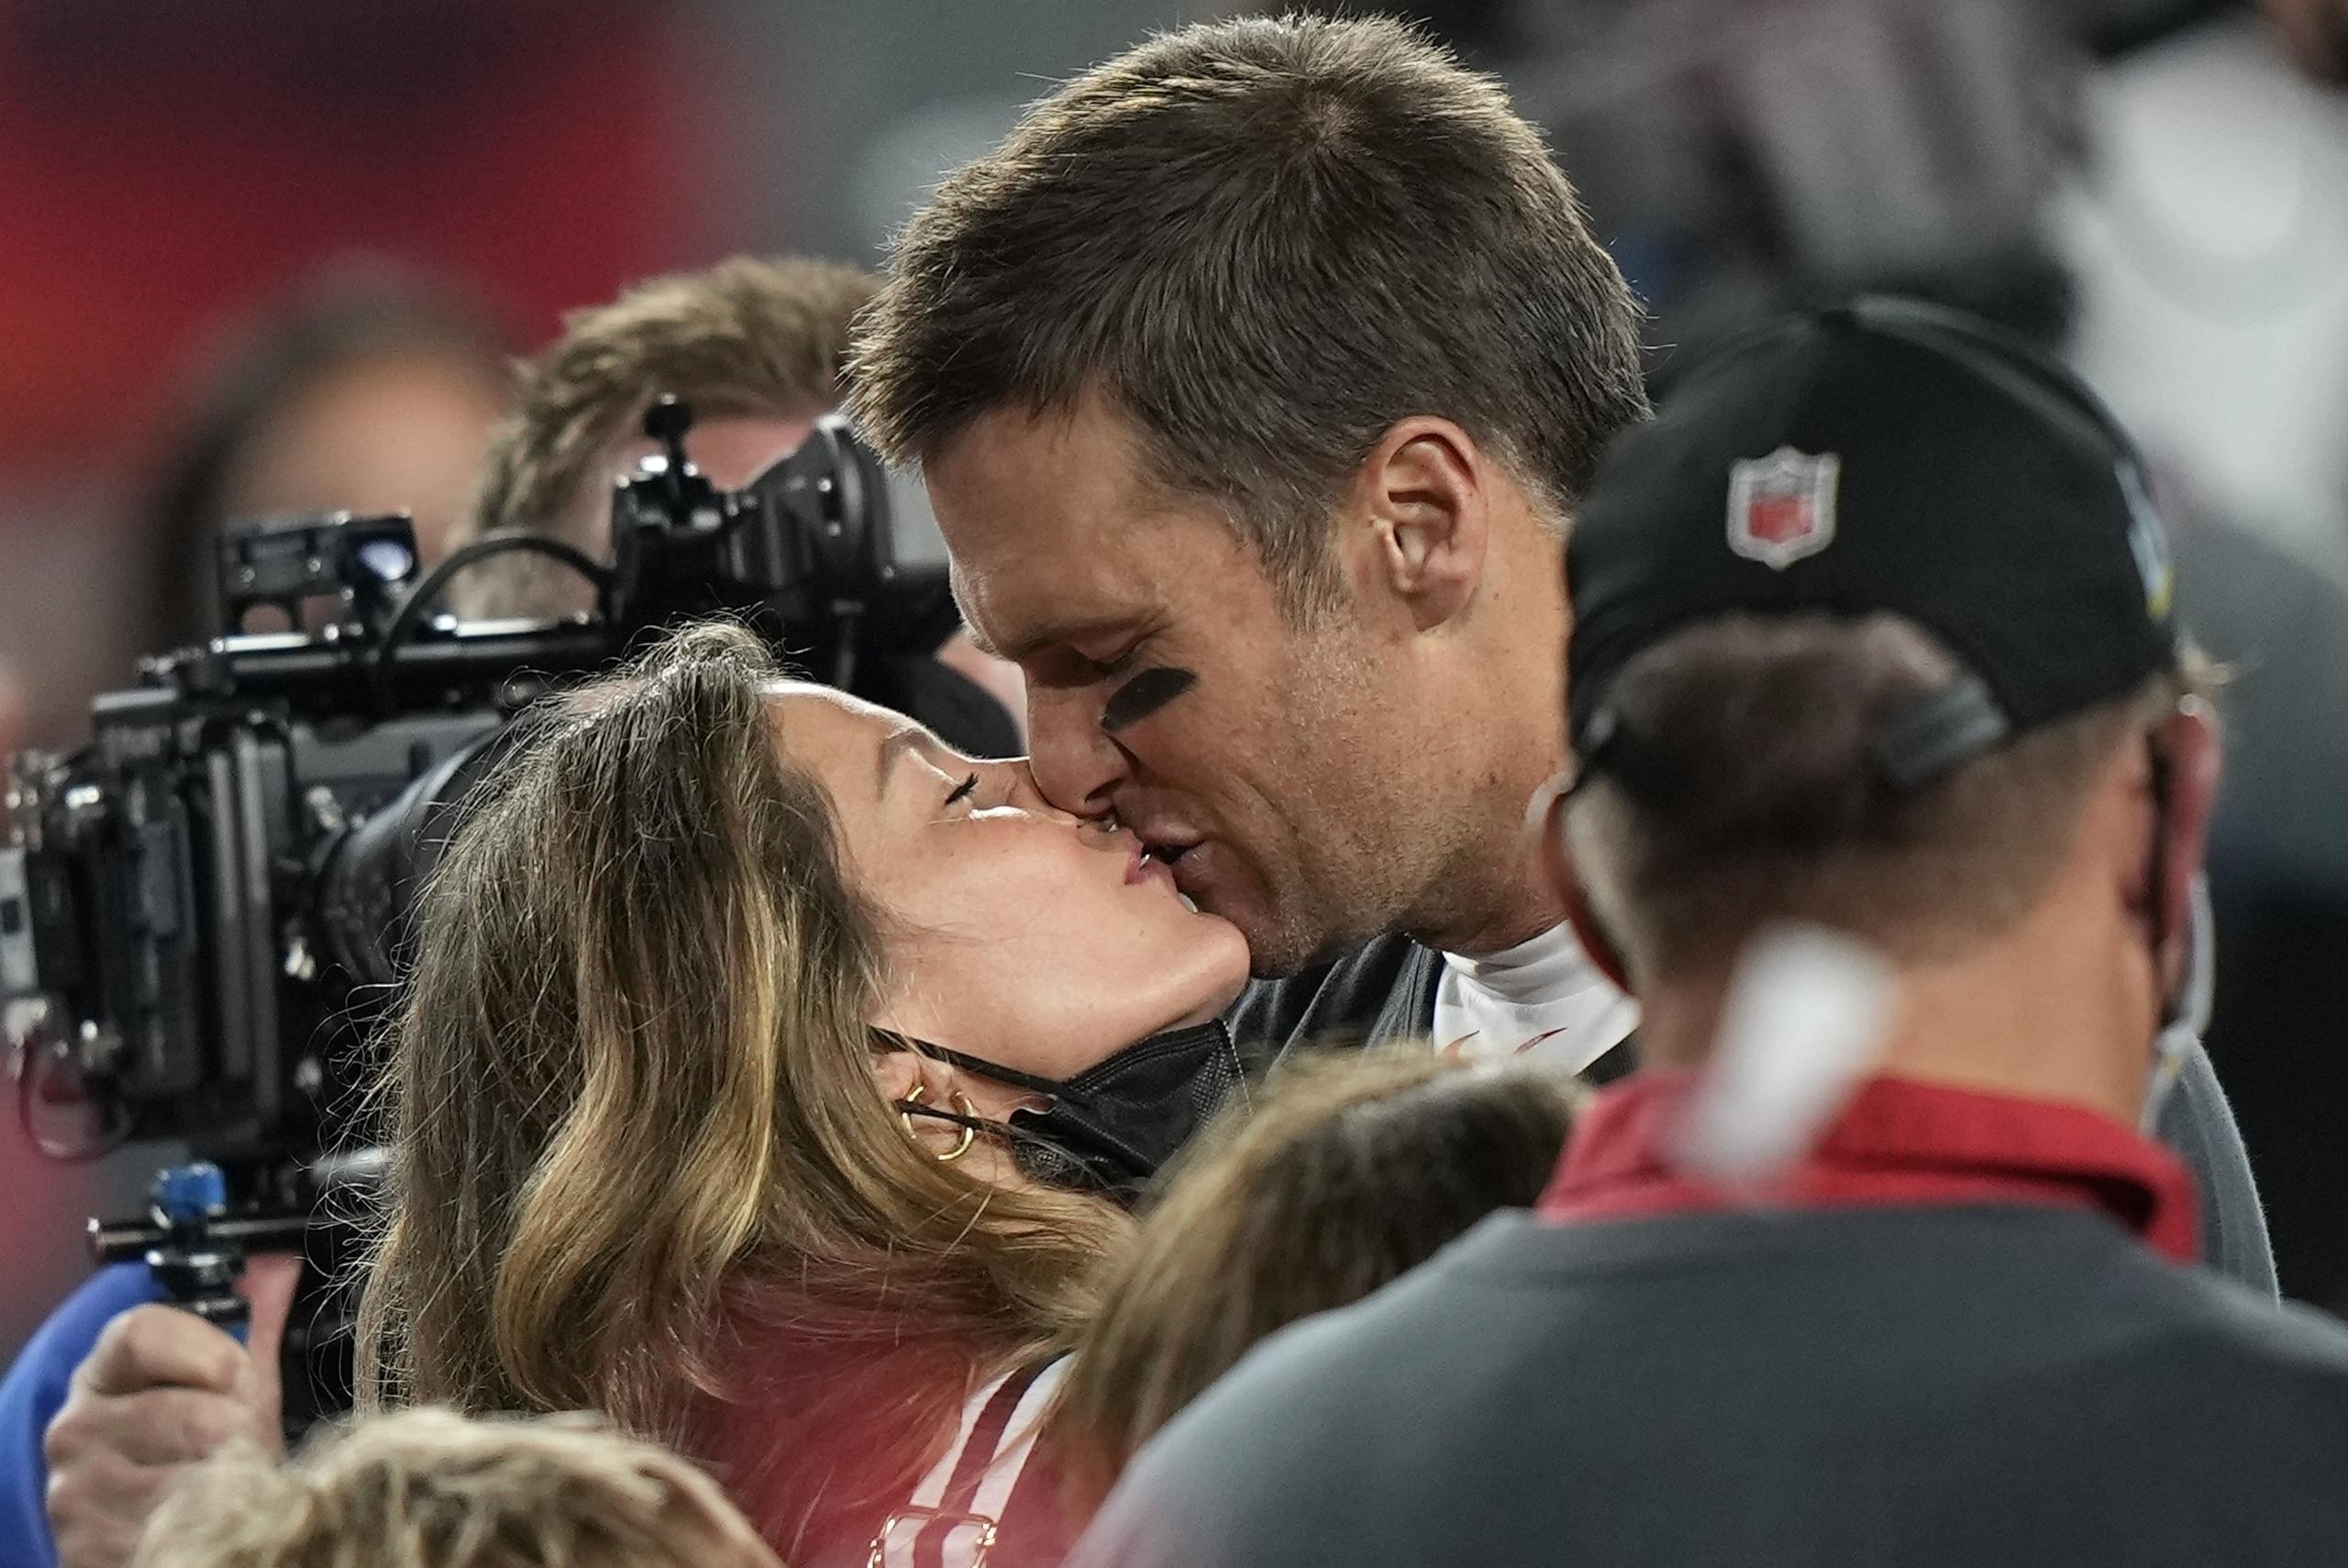 El quarterback Tom Brady de los Buccaneers de Tampa Bay besa a su esposa Gisele Bundchen tras vencer a los Chiefs de Kansas City en el Super Bowl, el domingo 7 de febrero de 2021, en Tampa, Florida. (AP Foto/David J. Phillip)